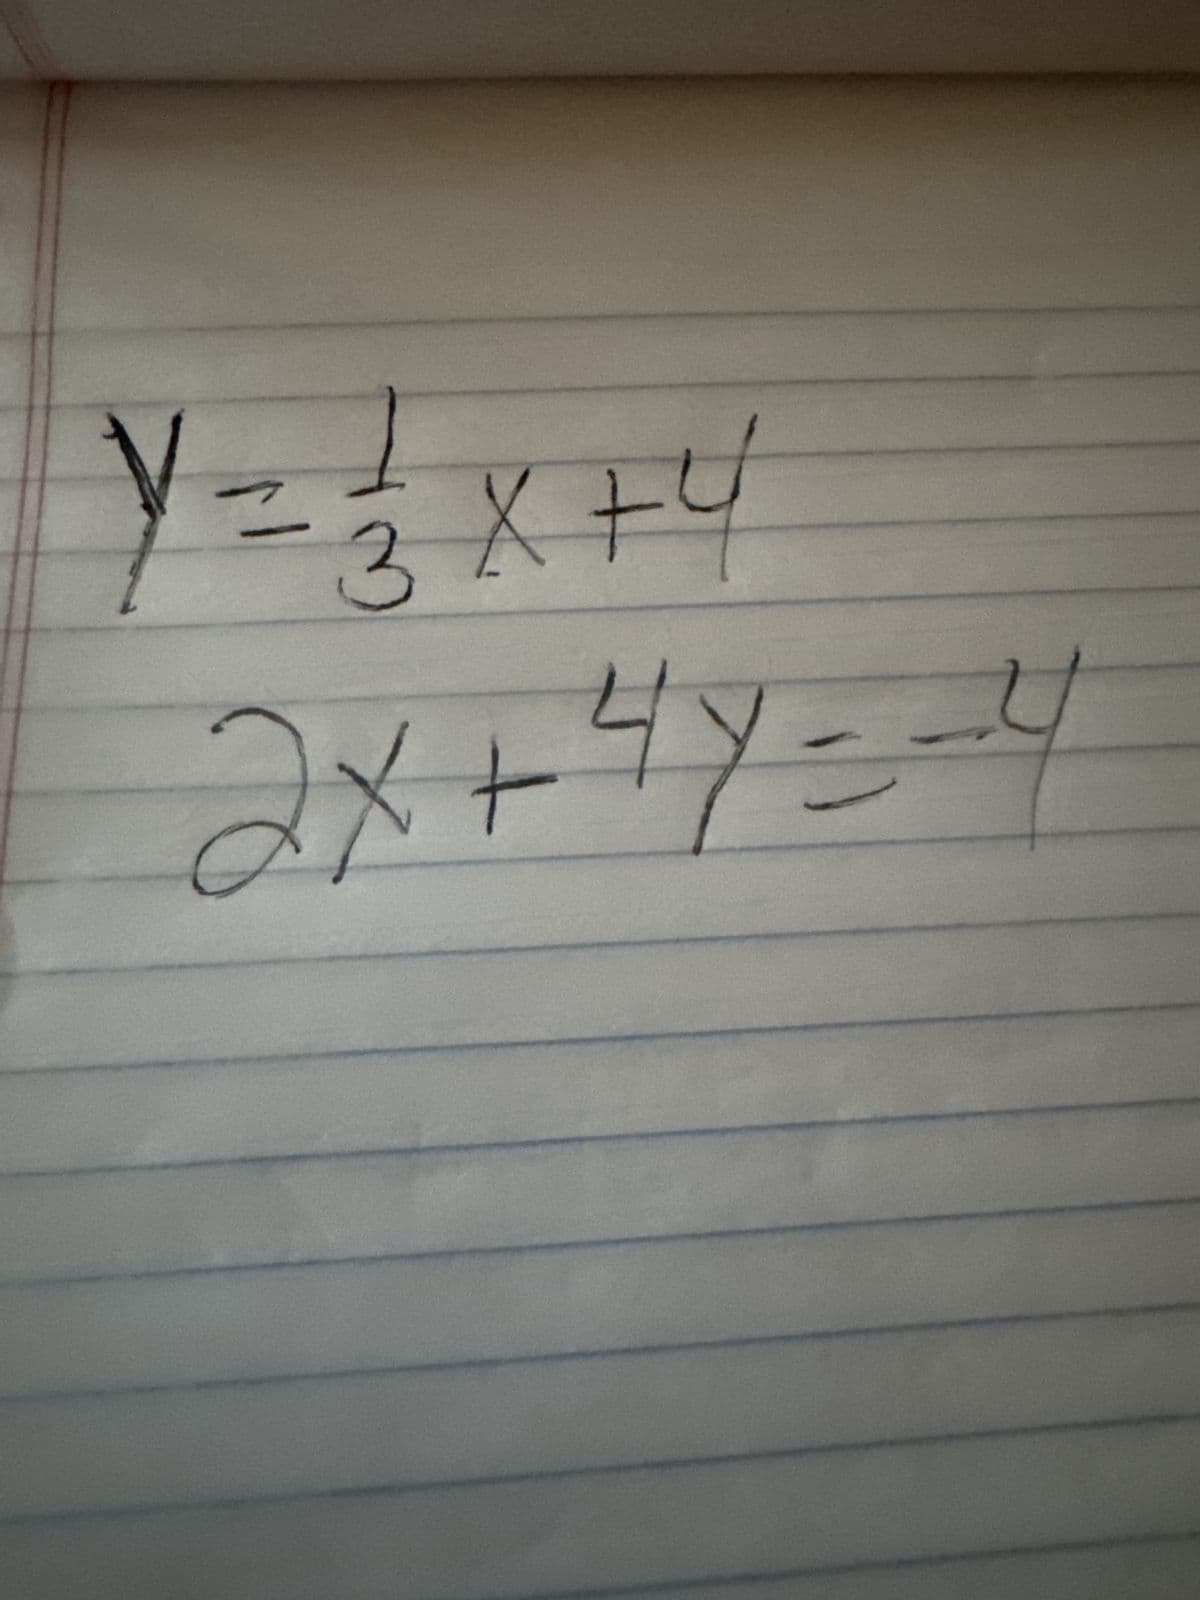 Y=3x+4
X
2x+4y=-4